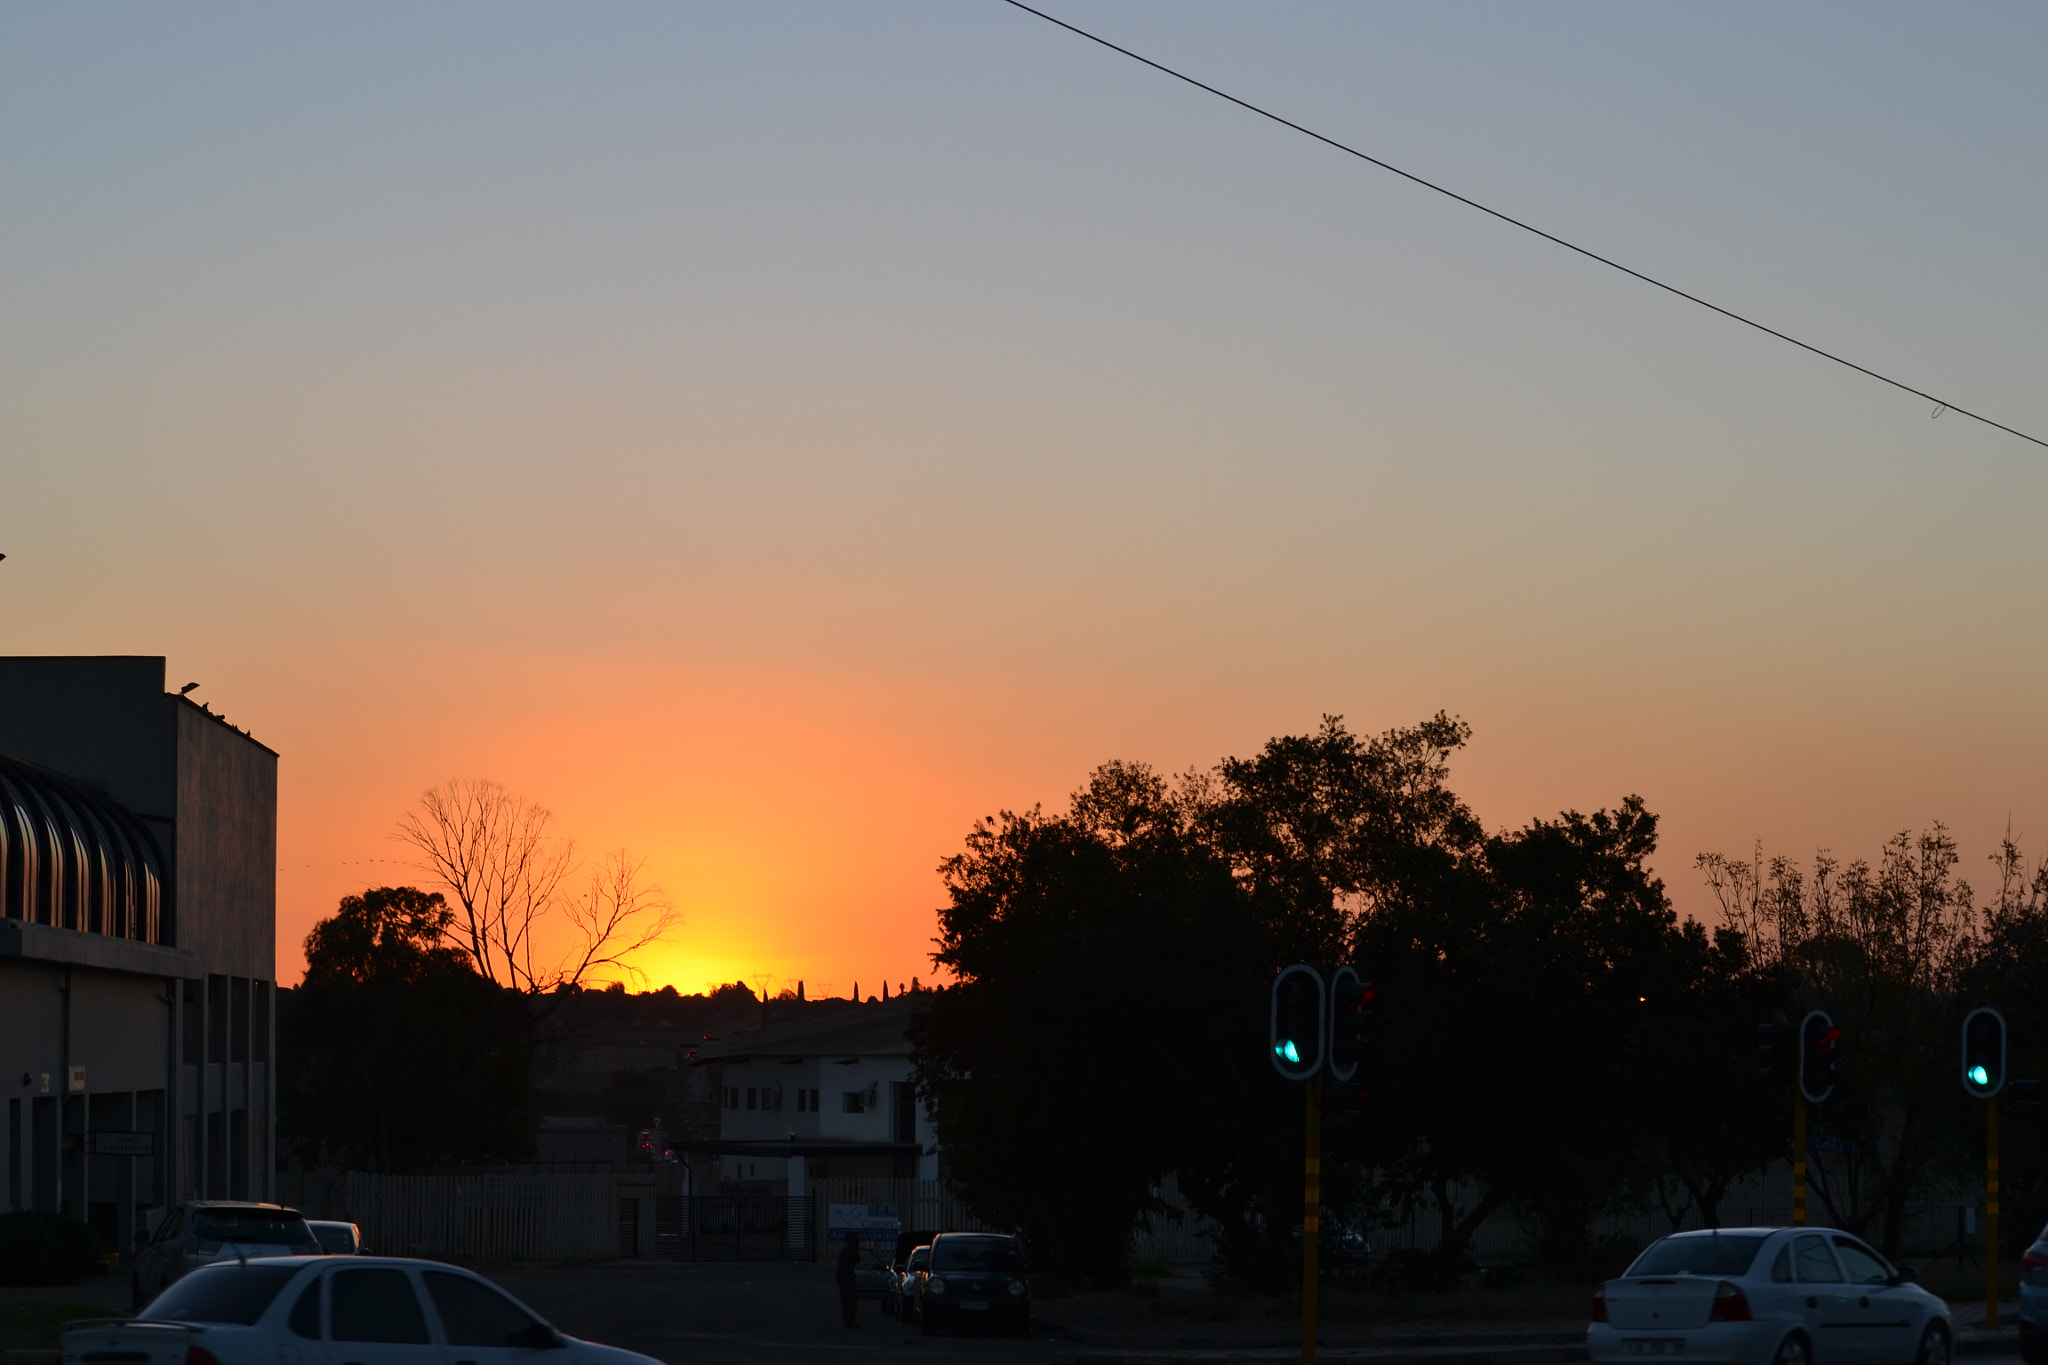 Nikon D3100 sample photo. Sunset photography